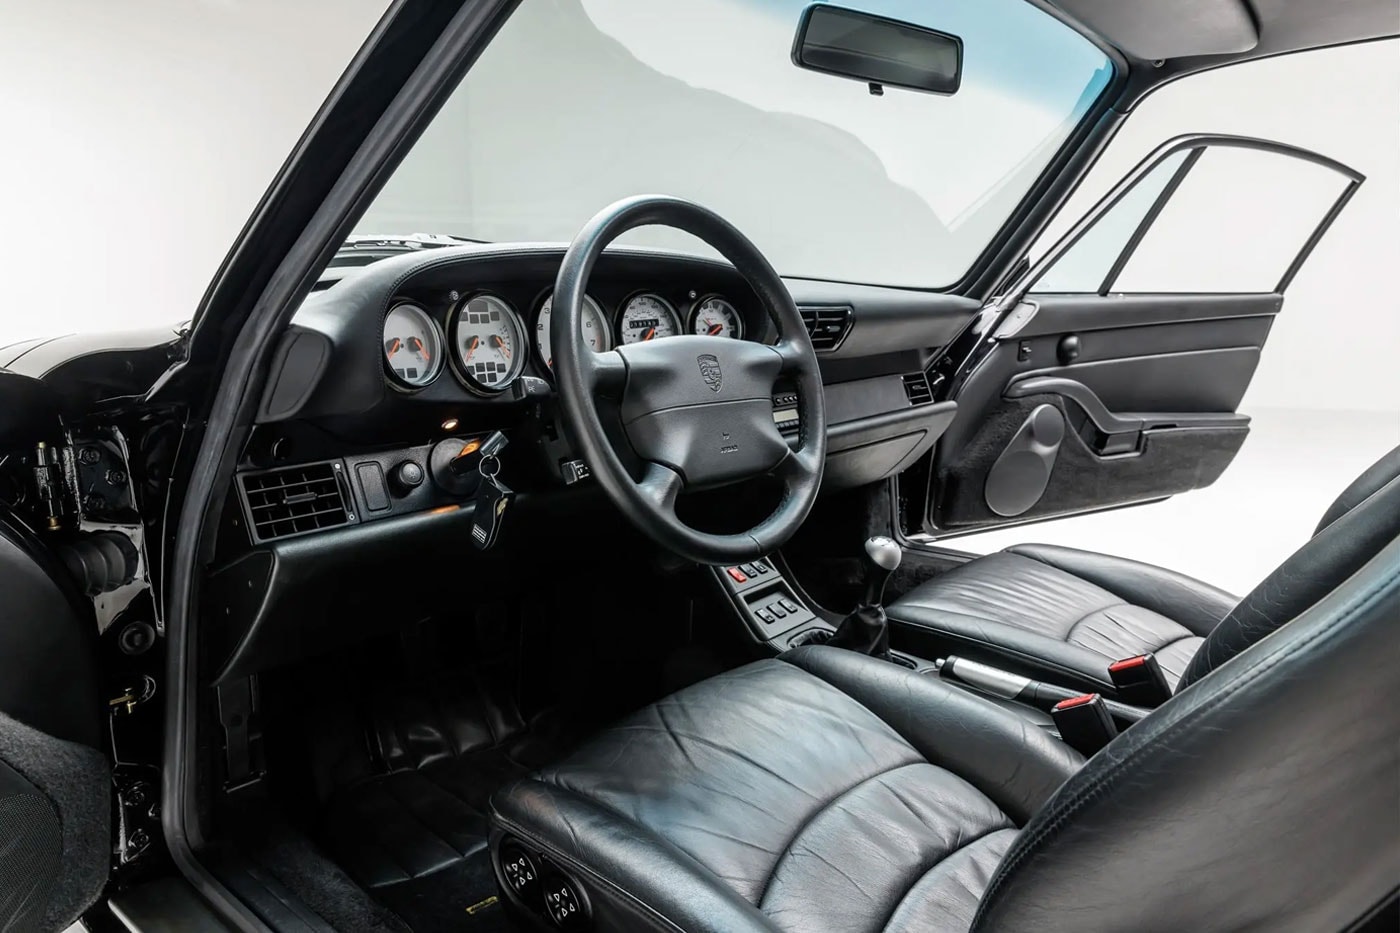 덴젤 워싱턴의 1997년식 포르쉐 993 터보가 경매에 올랐다, 영화배우, 자동차, 스포츠카